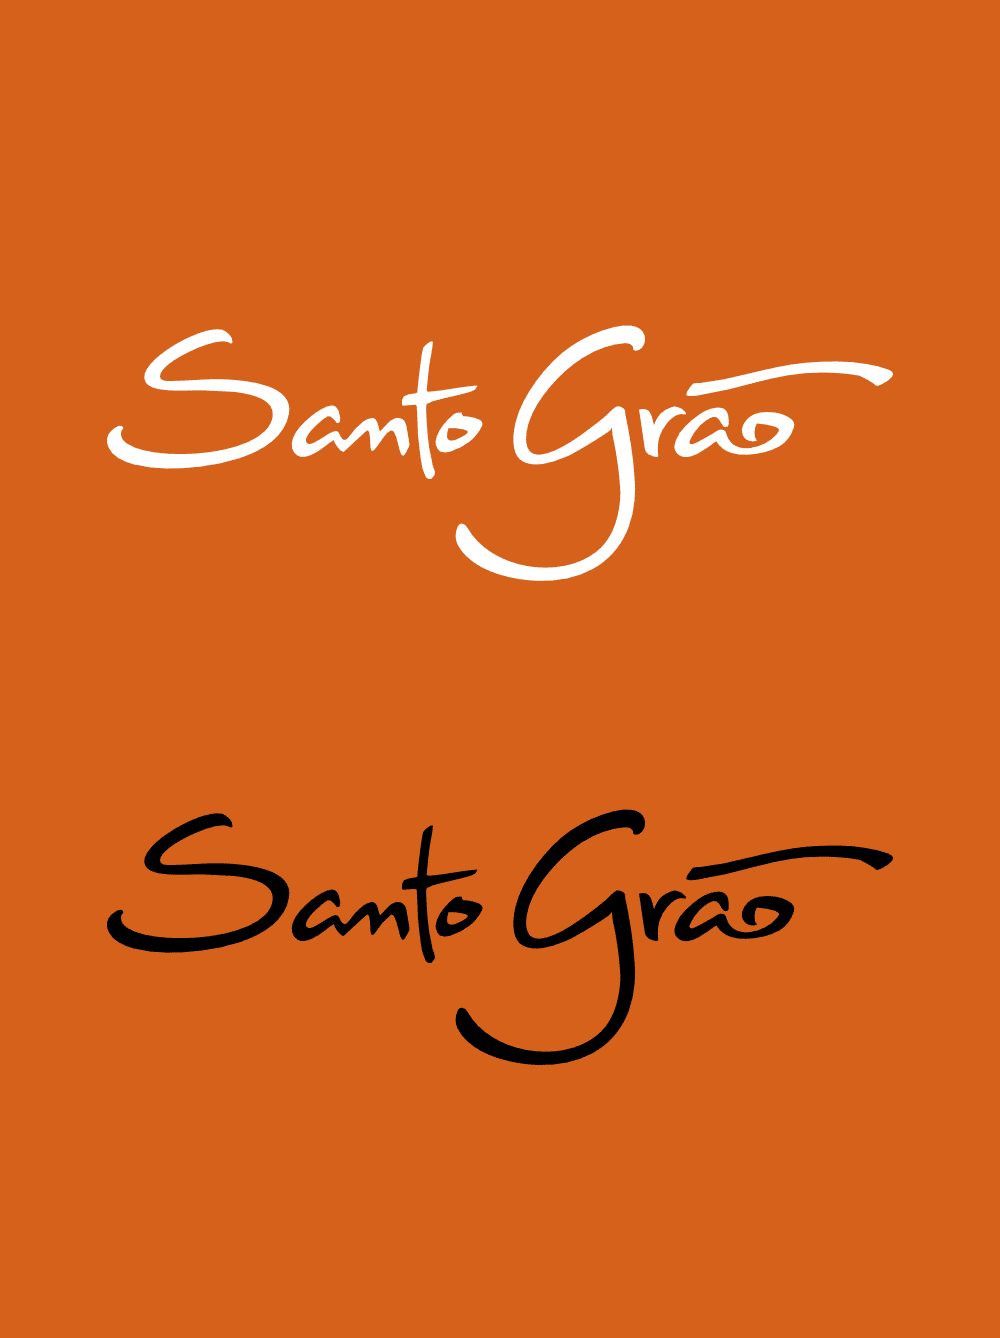 Marca Santo Grão aplicada sobre fundo de cor laranja. Design desenvolvido no âmbito do projeto de Identidade Visual.